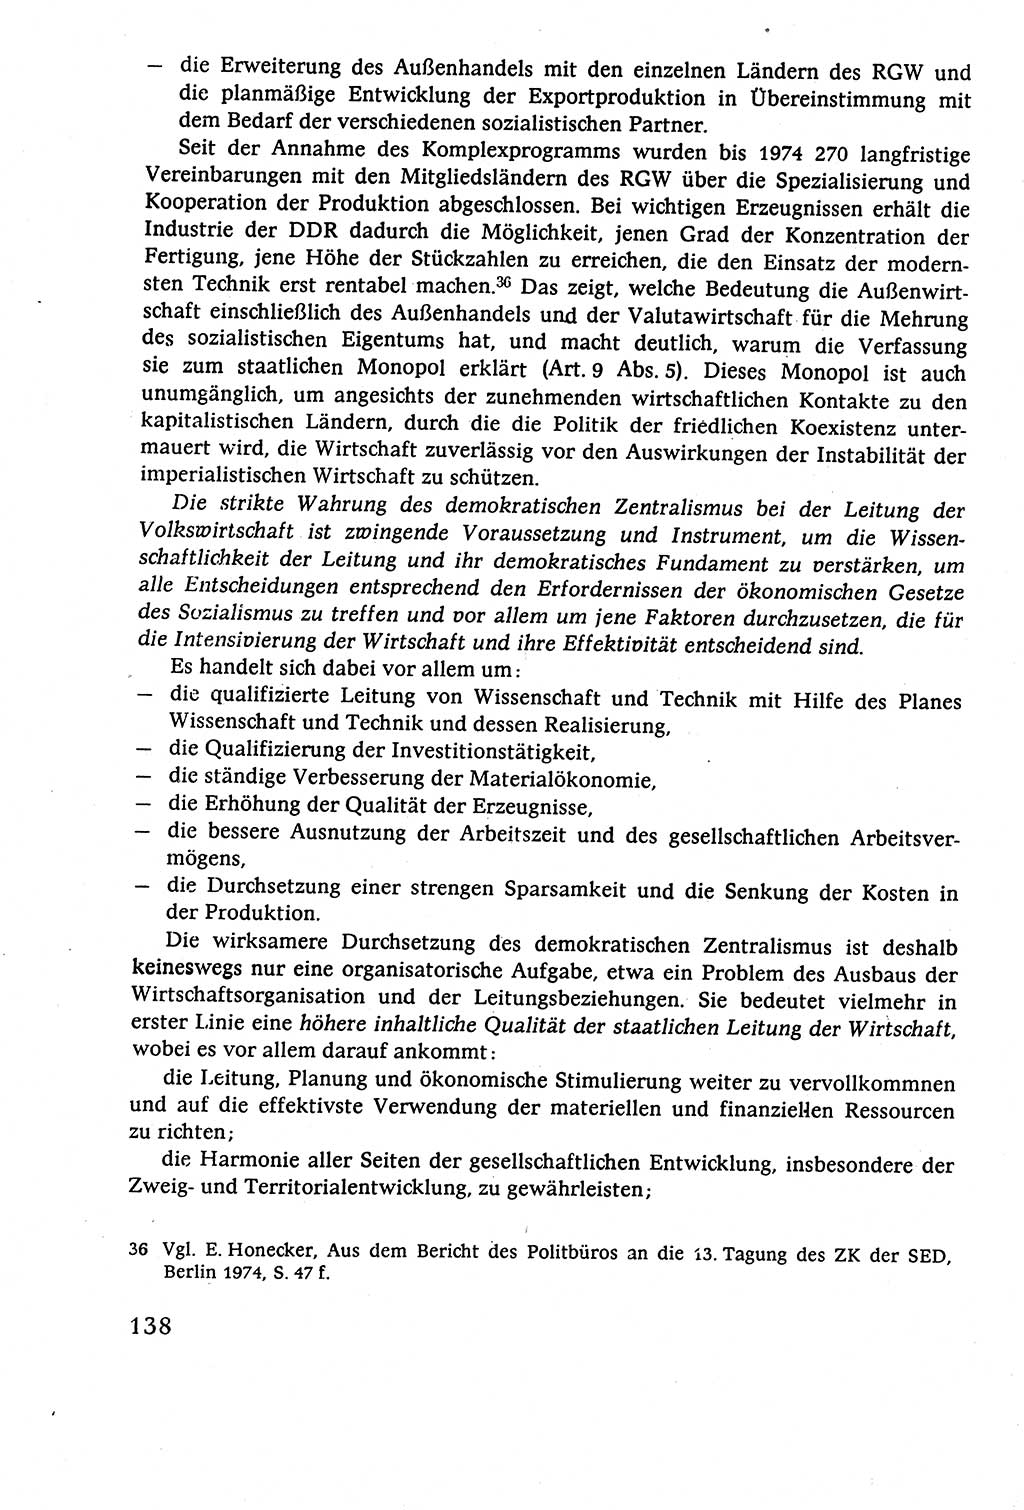 Staatsrecht der DDR (Deutsche Demokratische Republik), Lehrbuch 1977, Seite 138 (St.-R. DDR Lb. 1977, S. 138)